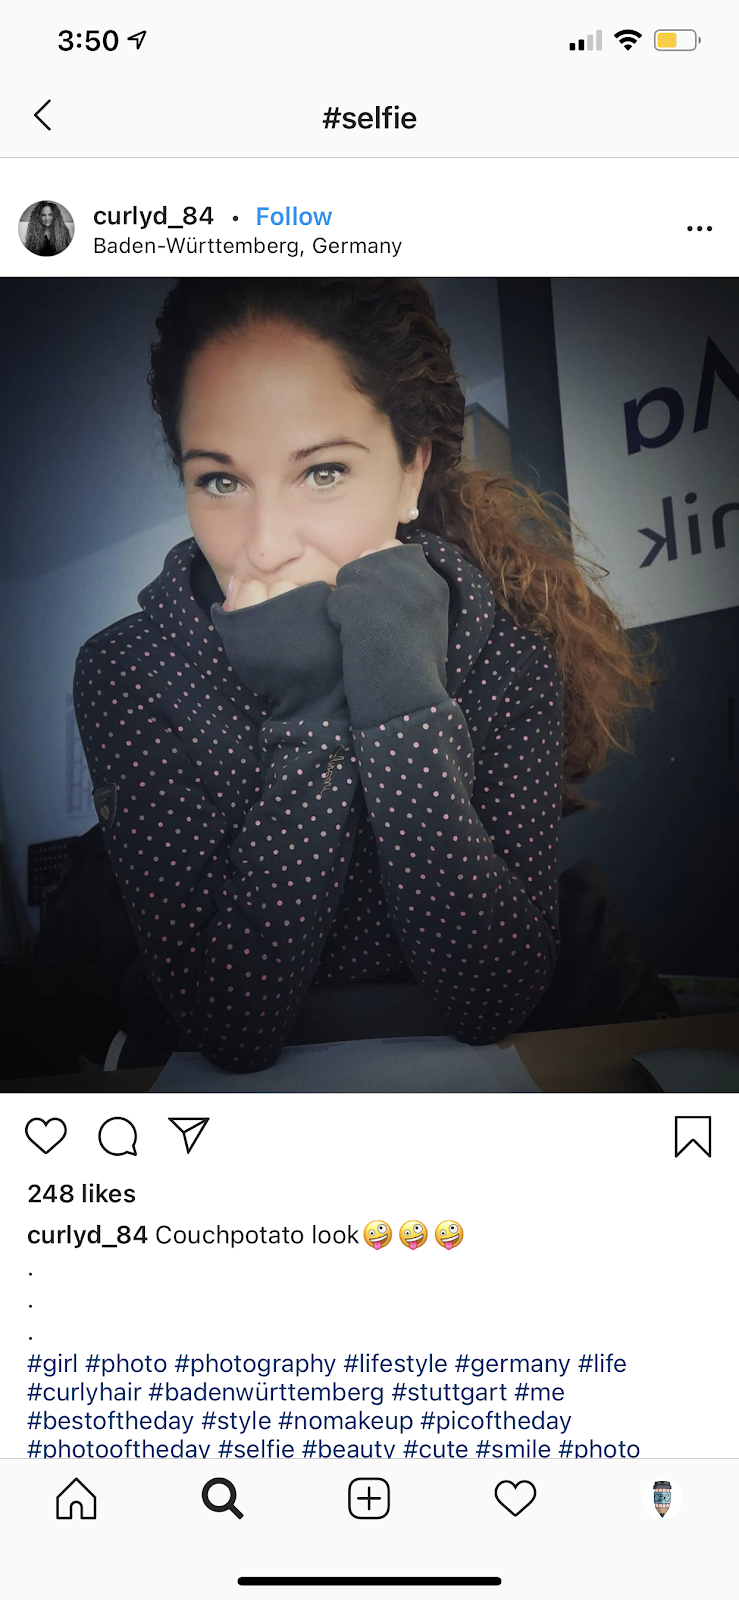 short Instagram captions for selfies